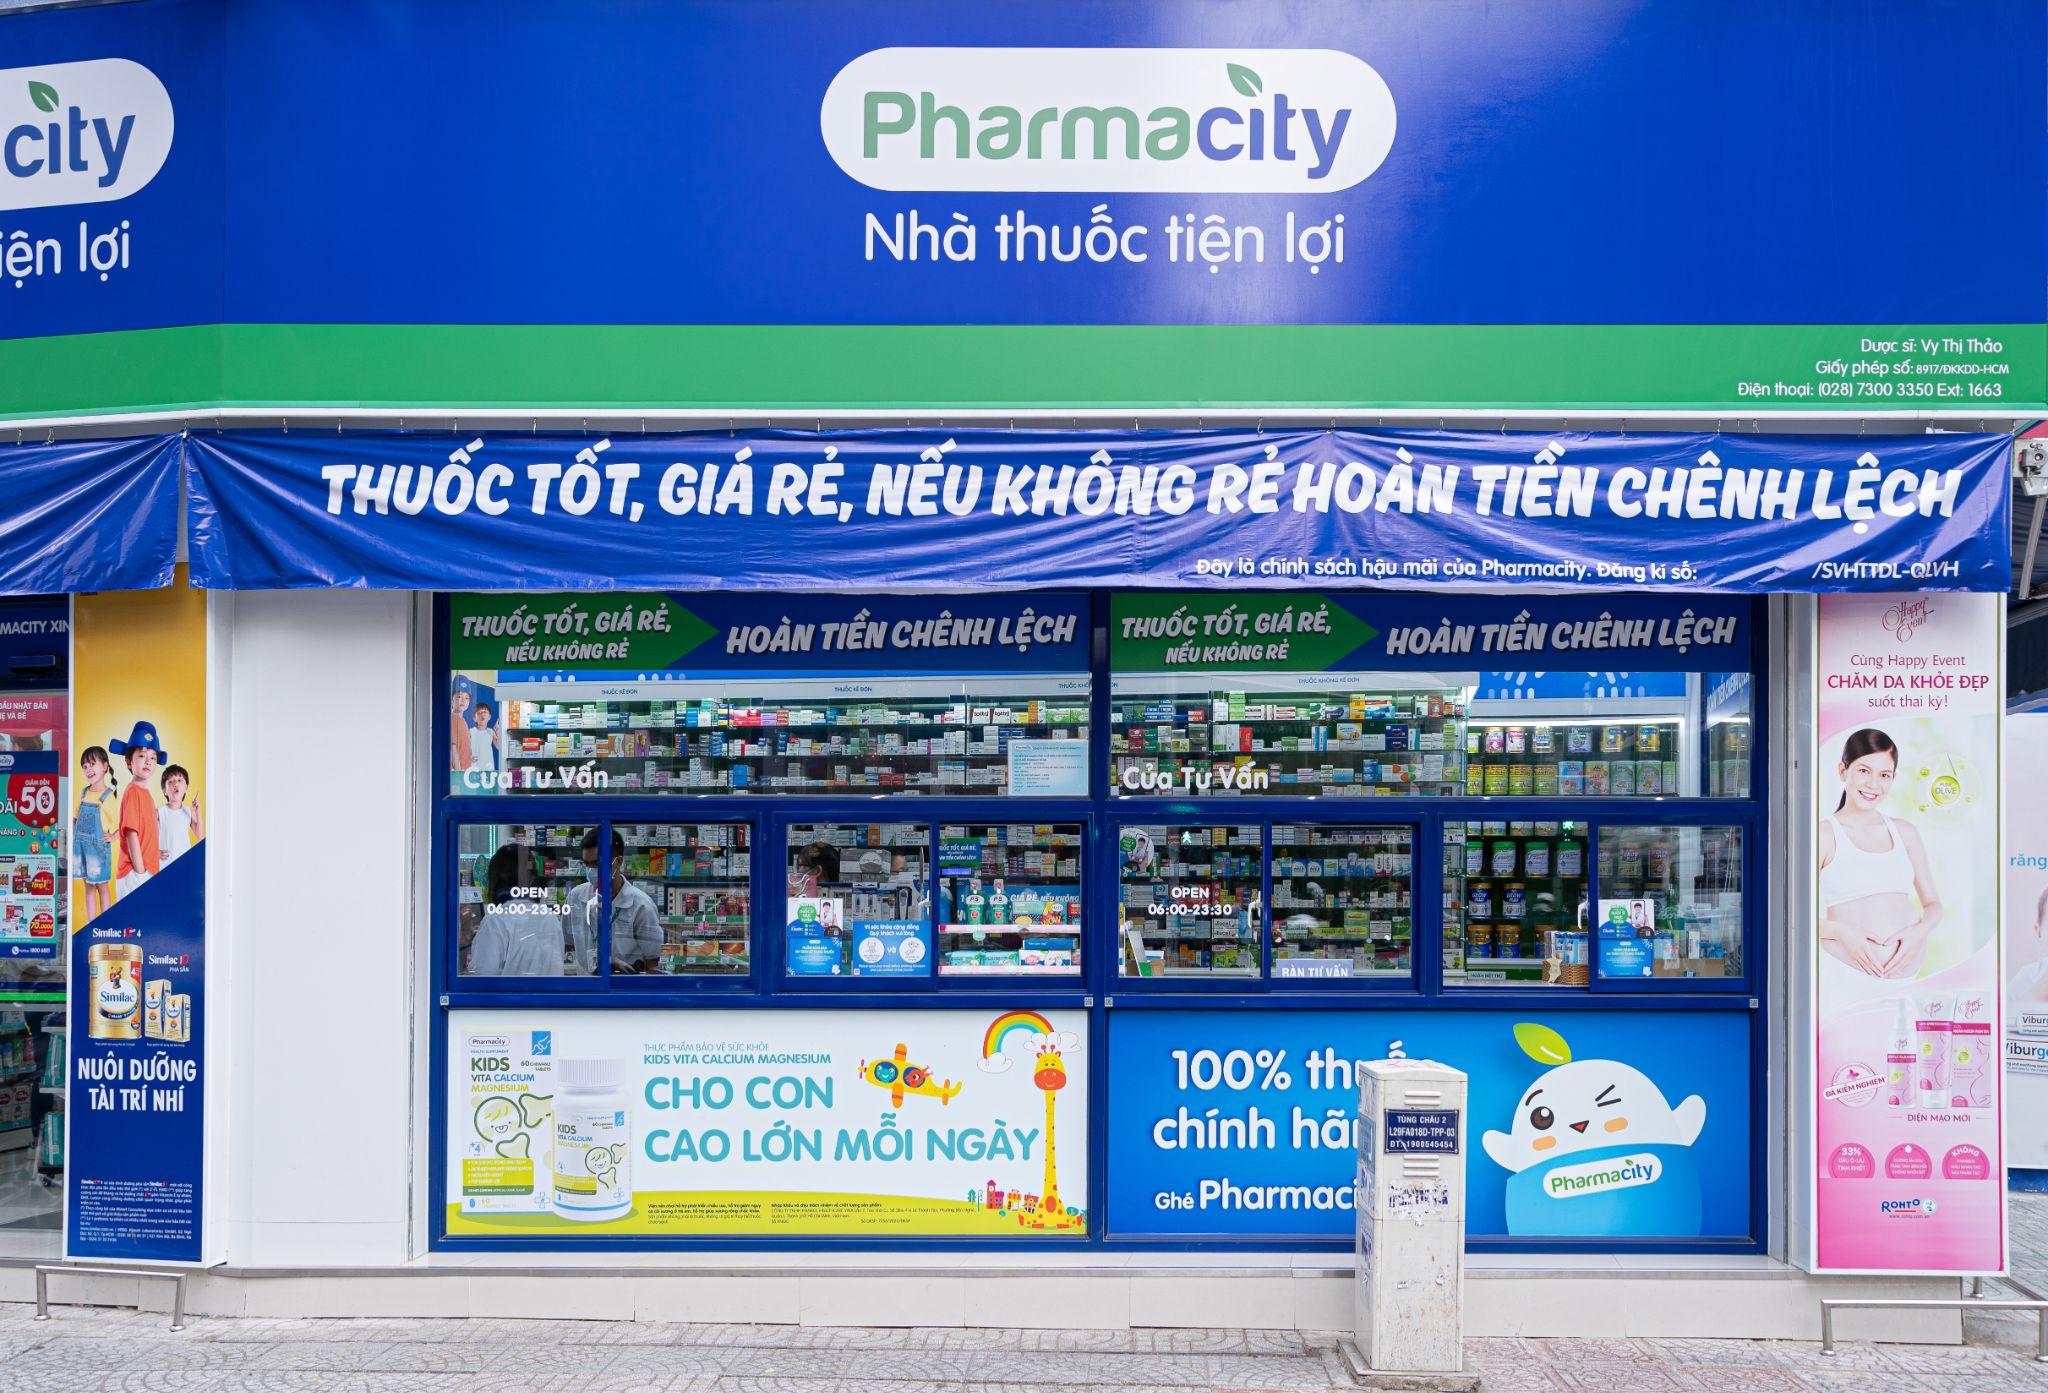 Khai trương nhà thuốc thứ 1.000: Pharmacity khẳng định vị thế hàng đầu Việt  Nam